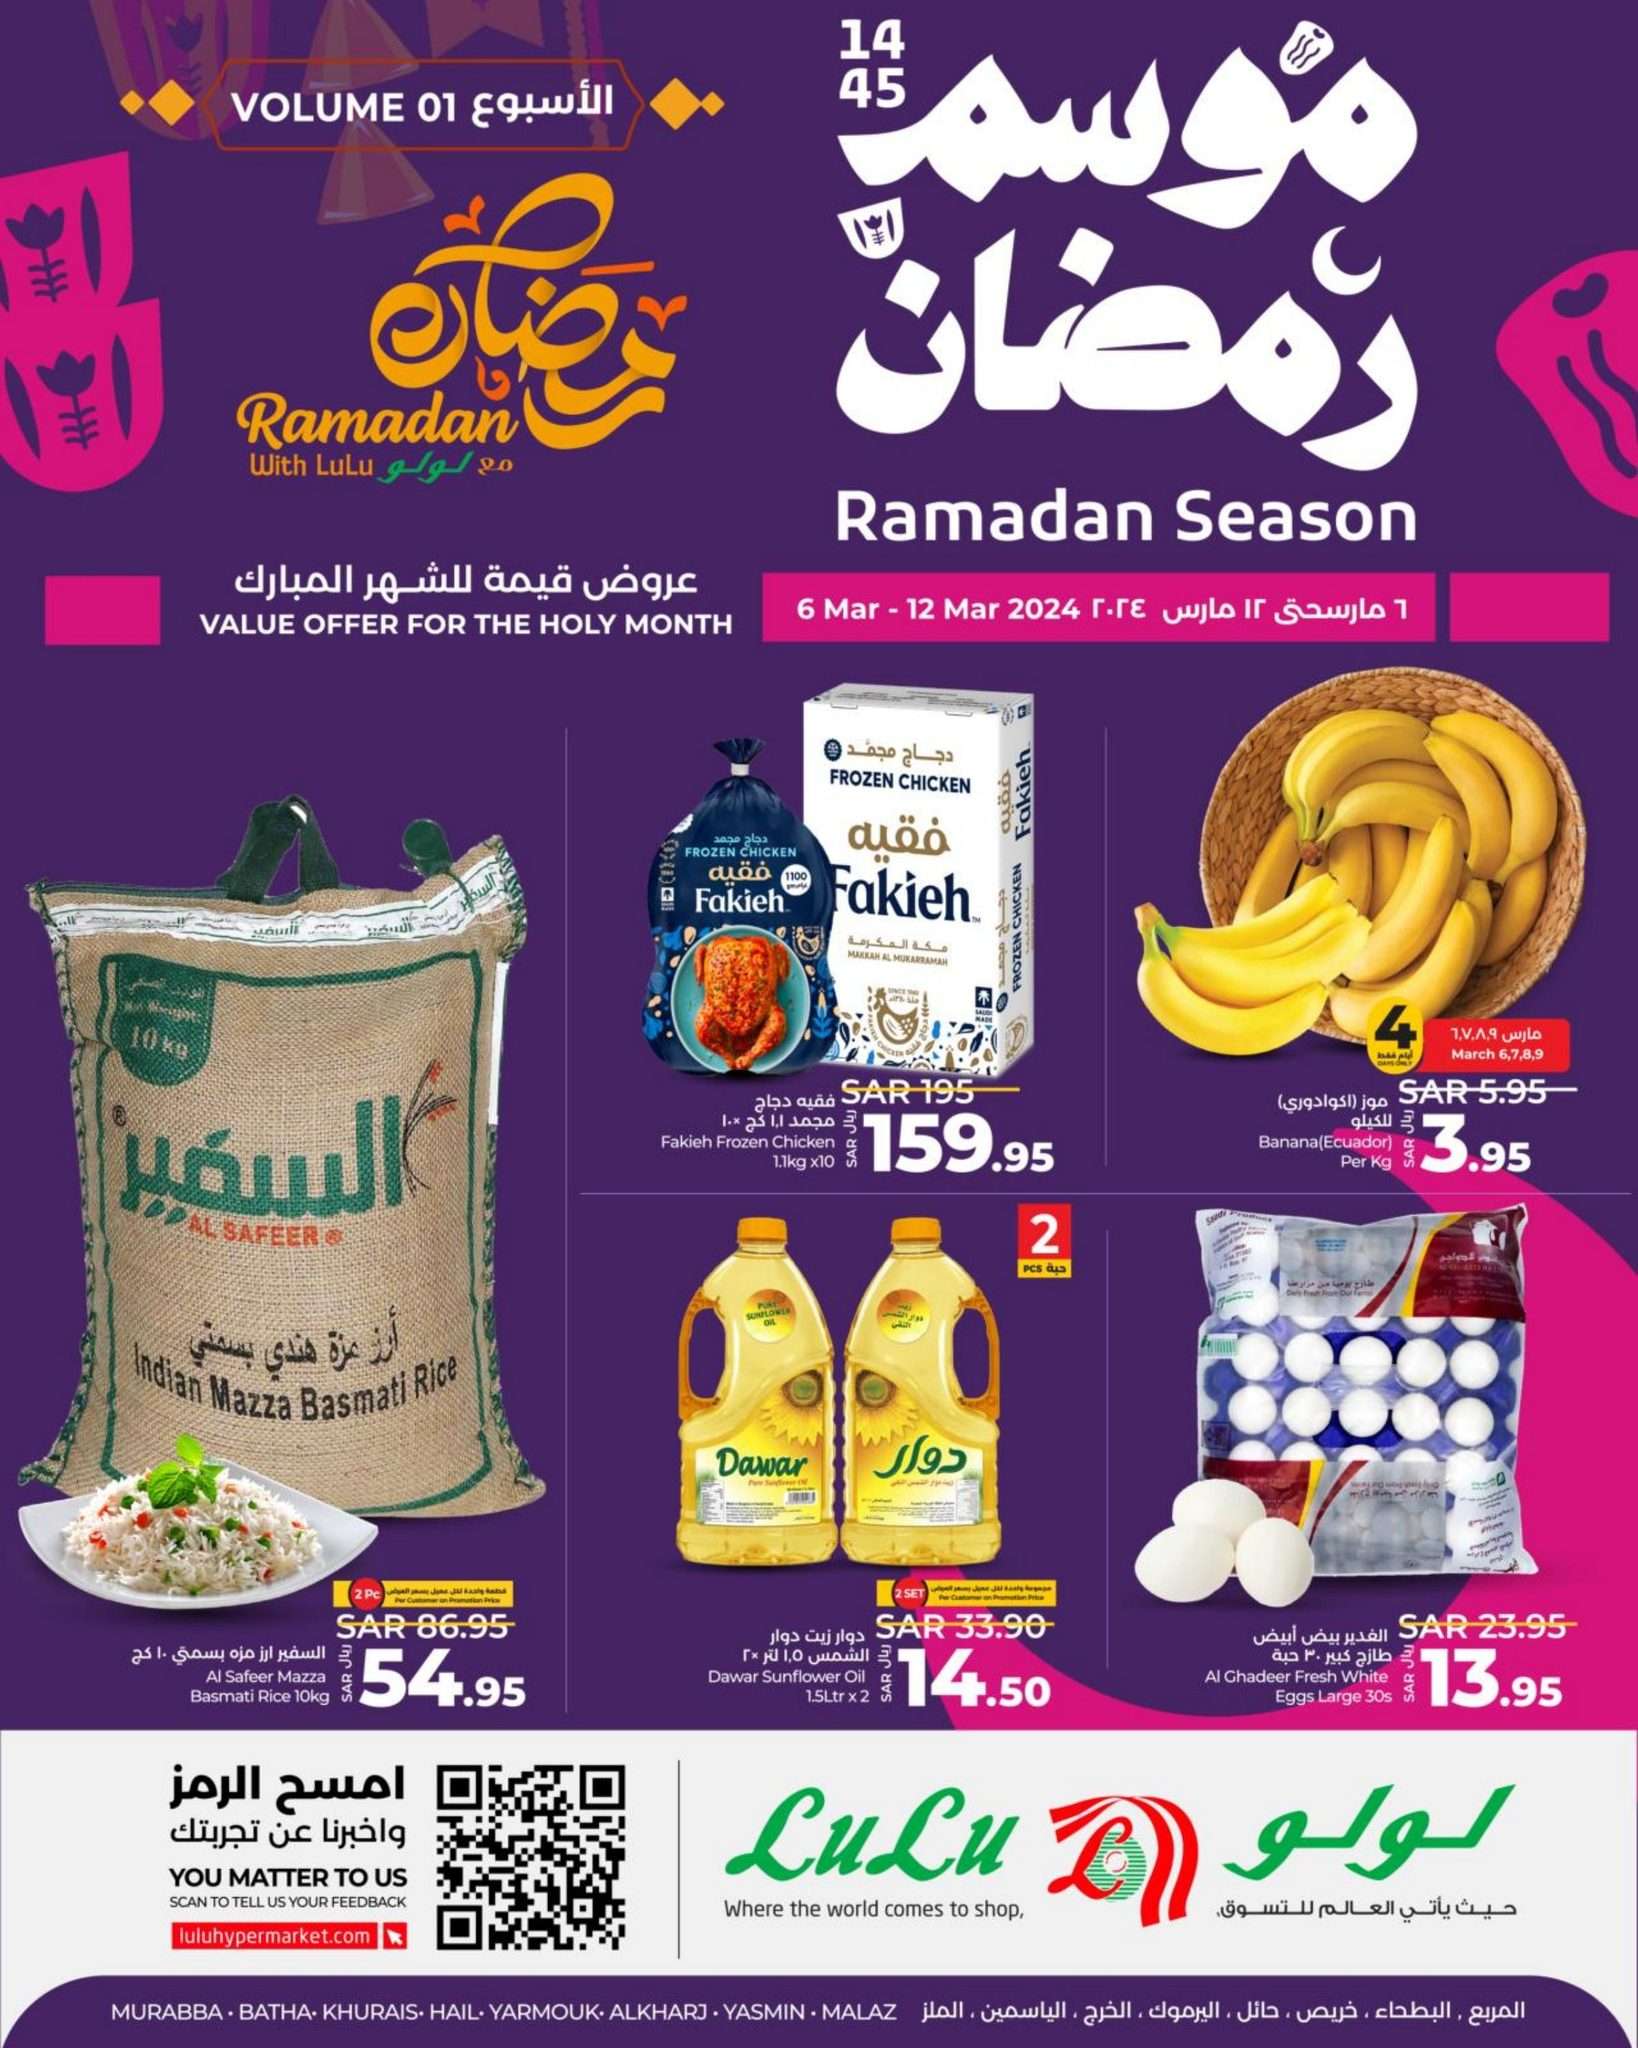 OOmLth - عروض رمضان 2024 : عروض لولو الرياض الأسبوعية صفحة واحدة الأربعاء 6/3/2024